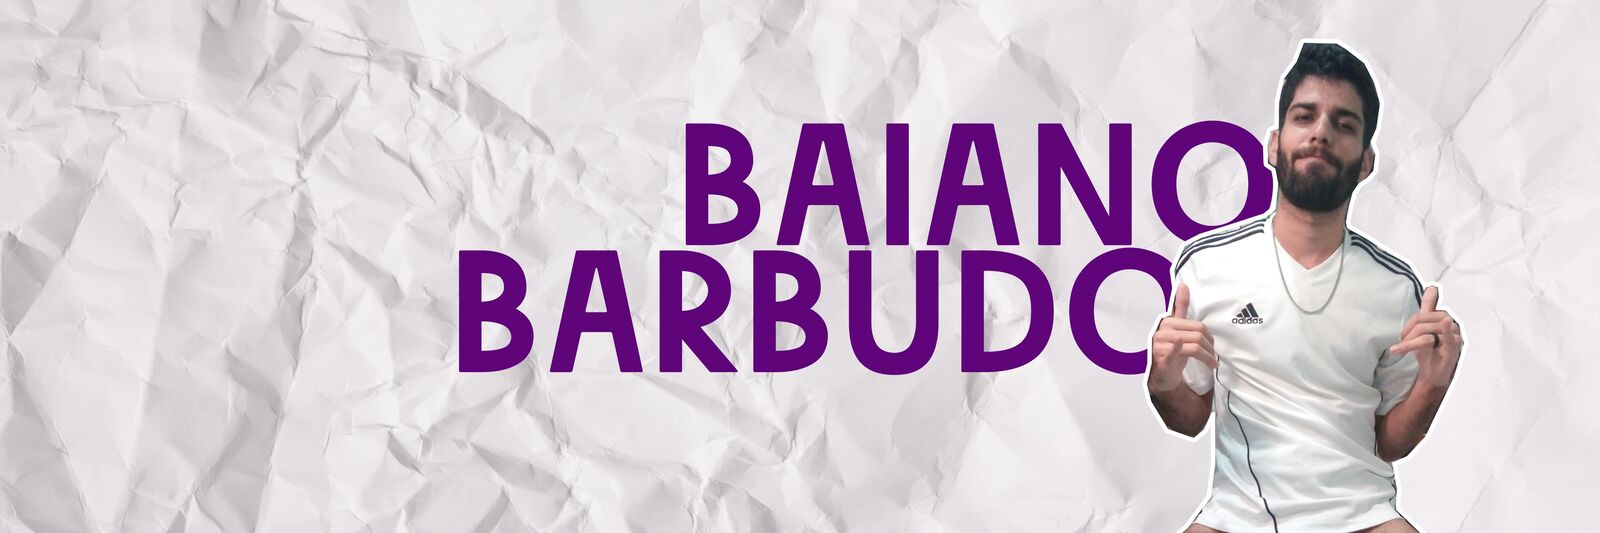 See Baiano Barbudo profile